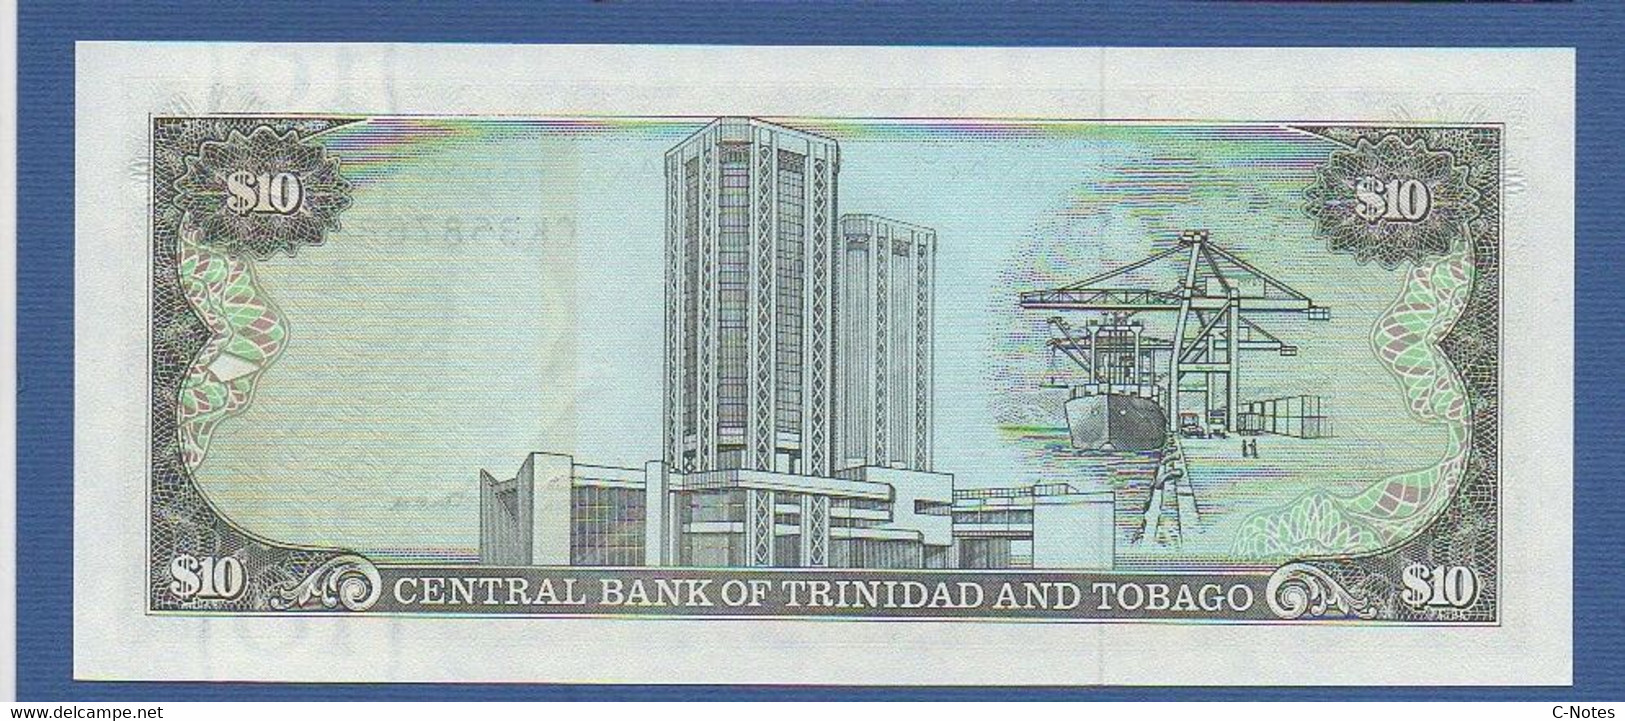 TRINIDAD & TOBAGO - P.38d – 10 Dollars ND (1985) "Chap. 79.02 - Arms" Issue, UNC, Serie CK 358768 - Trinidad & Tobago